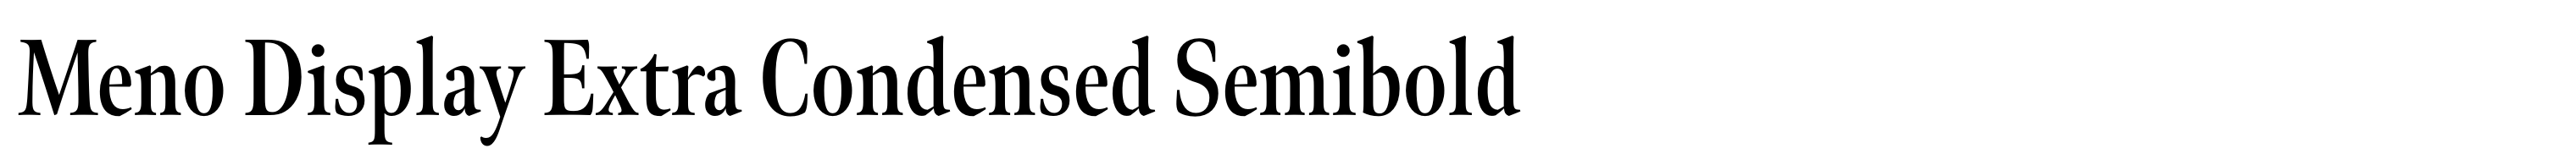 Meno Display Extra Condensed Semibold